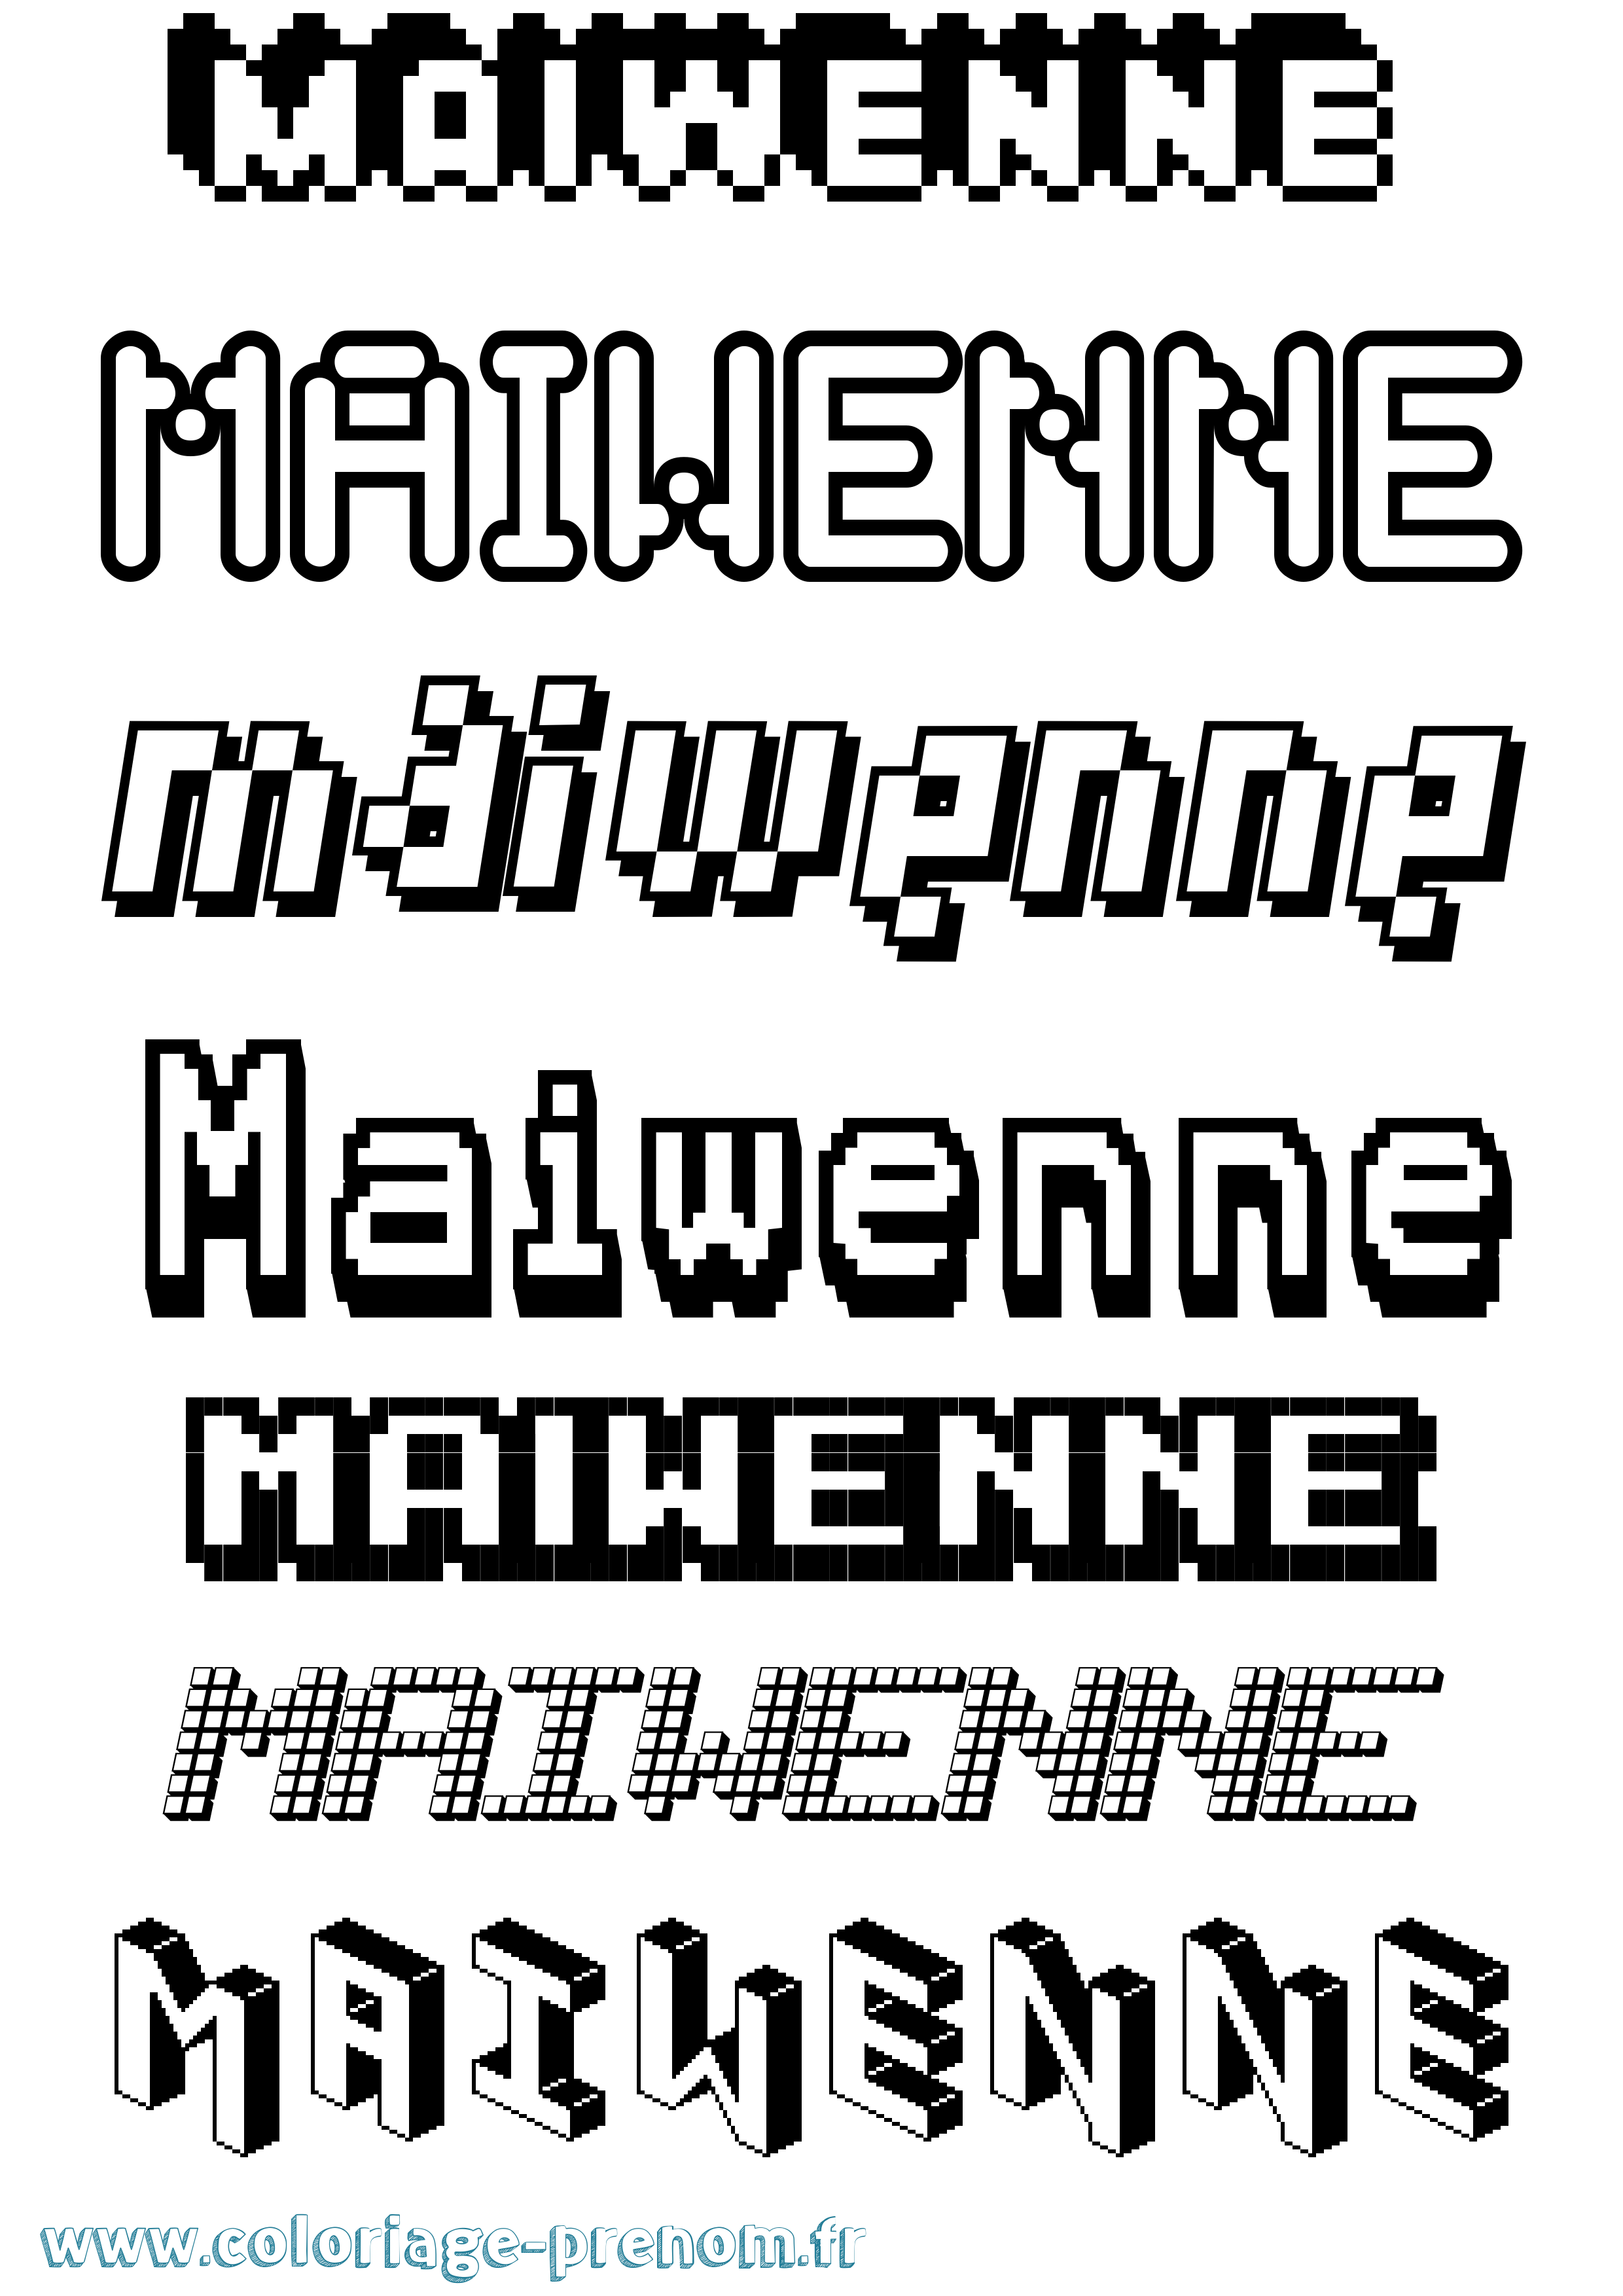 Coloriage prénom Maiwenne Pixel